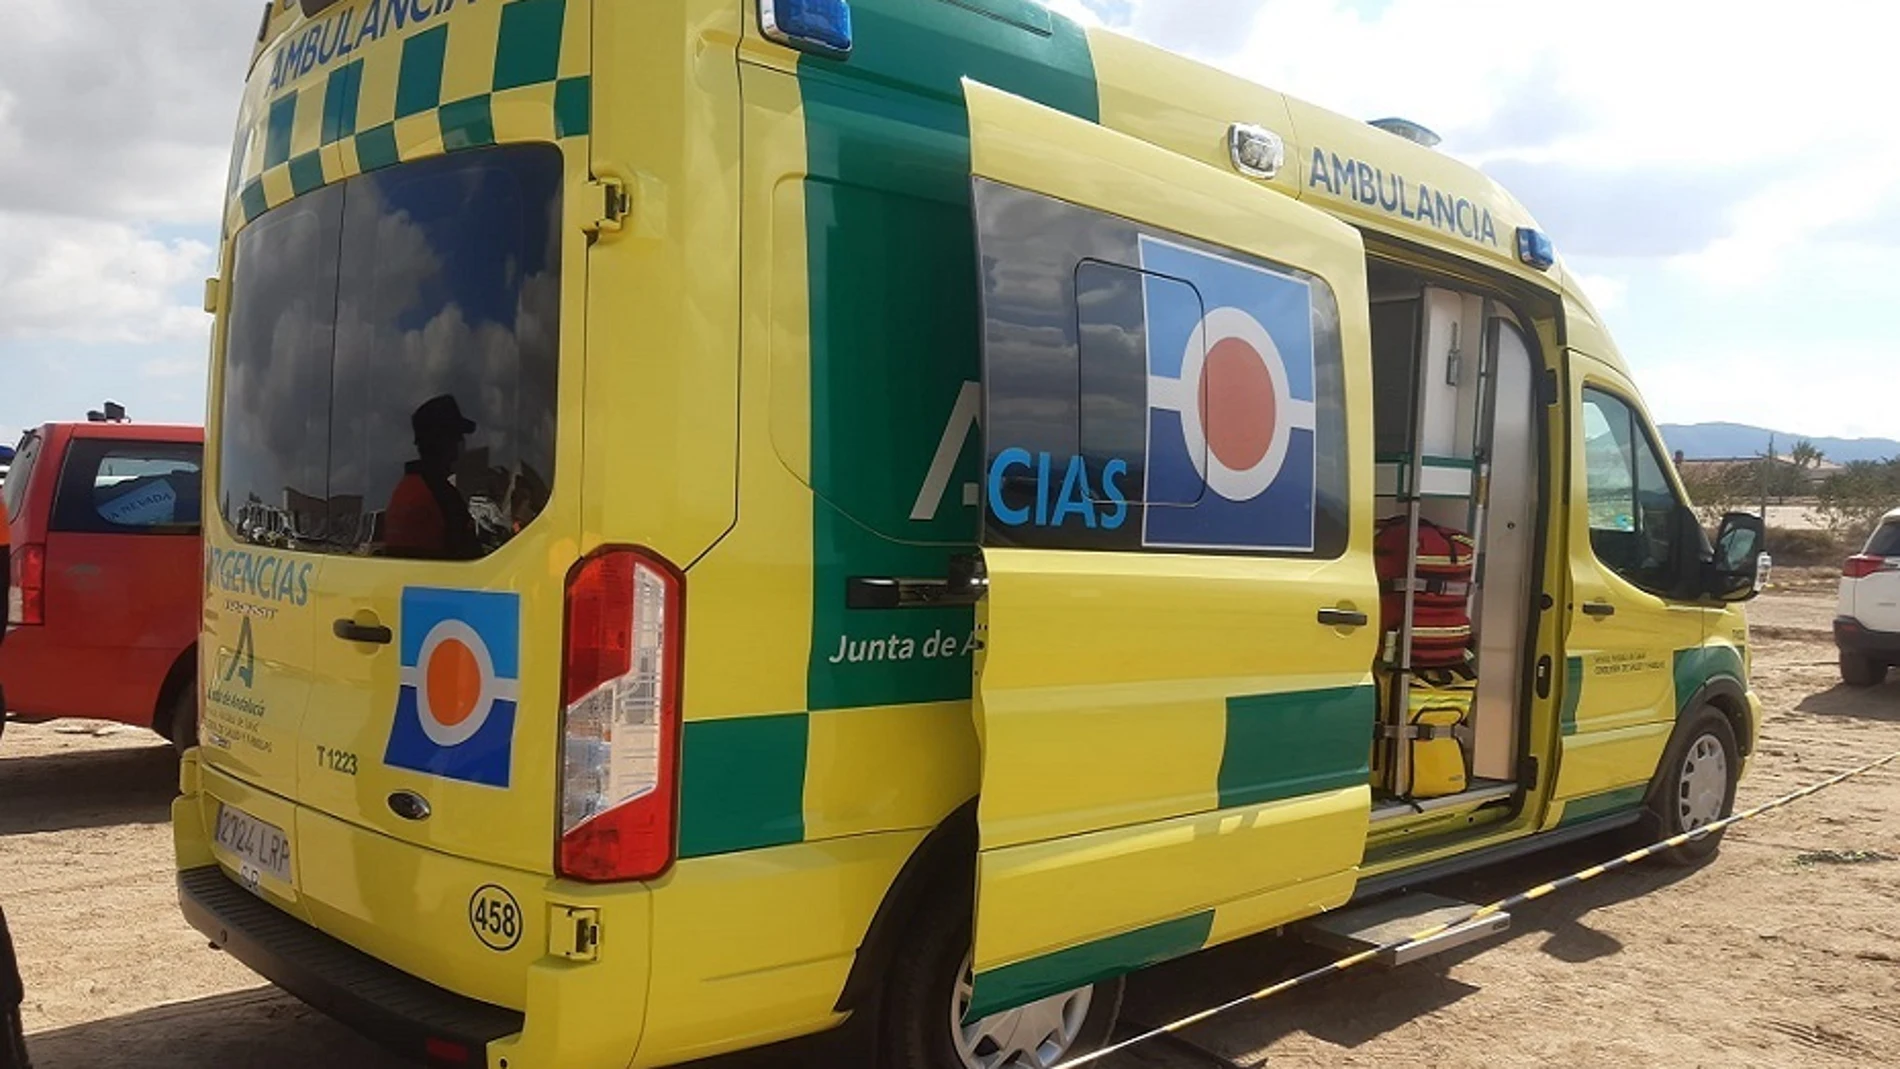 Ambulancia en una intervención112 ANDALUCÍA(Foto de ARCHIVO)05/12/2021